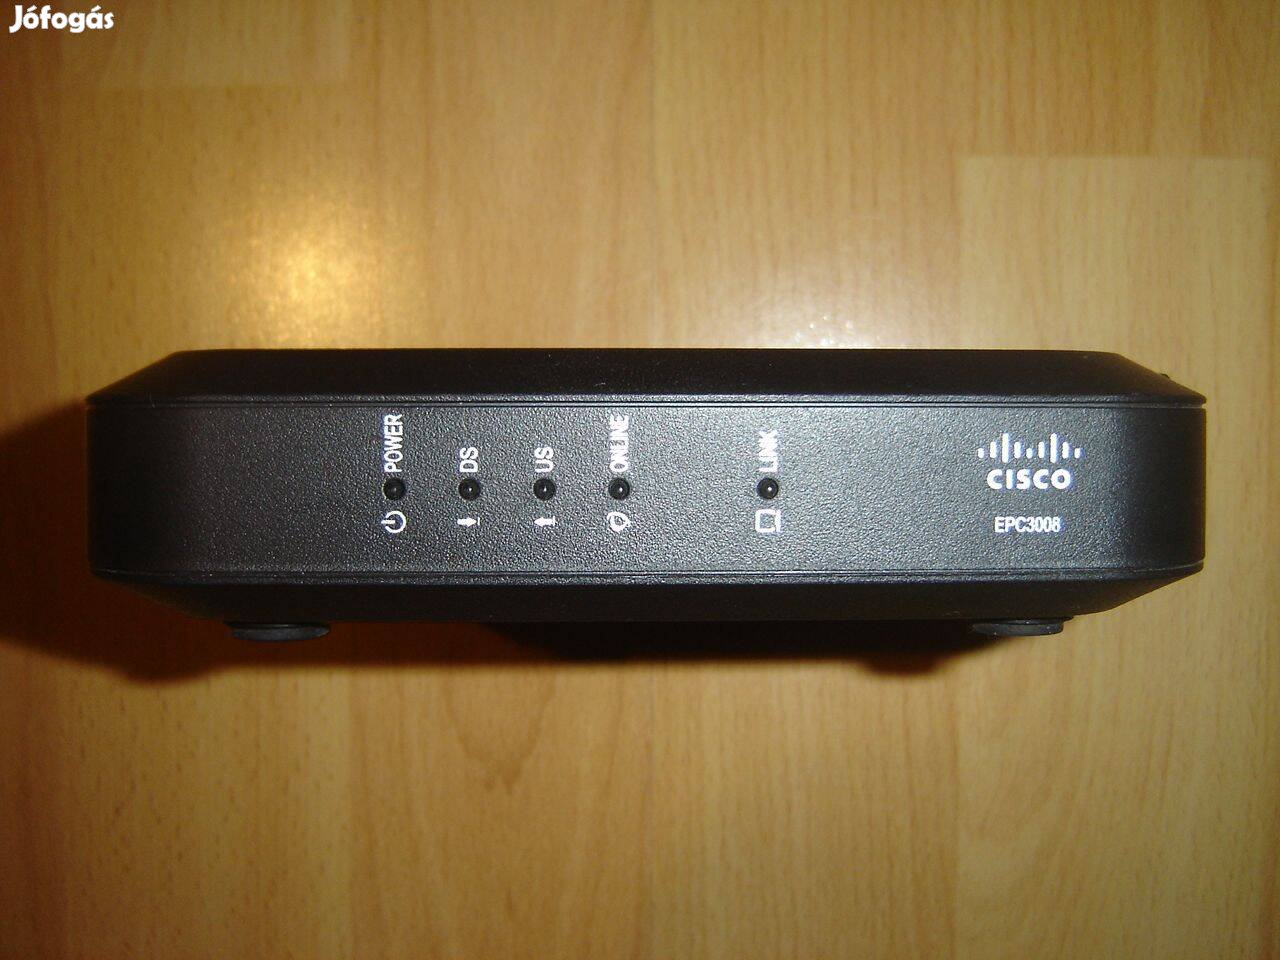 Cisco epc 3008 modem